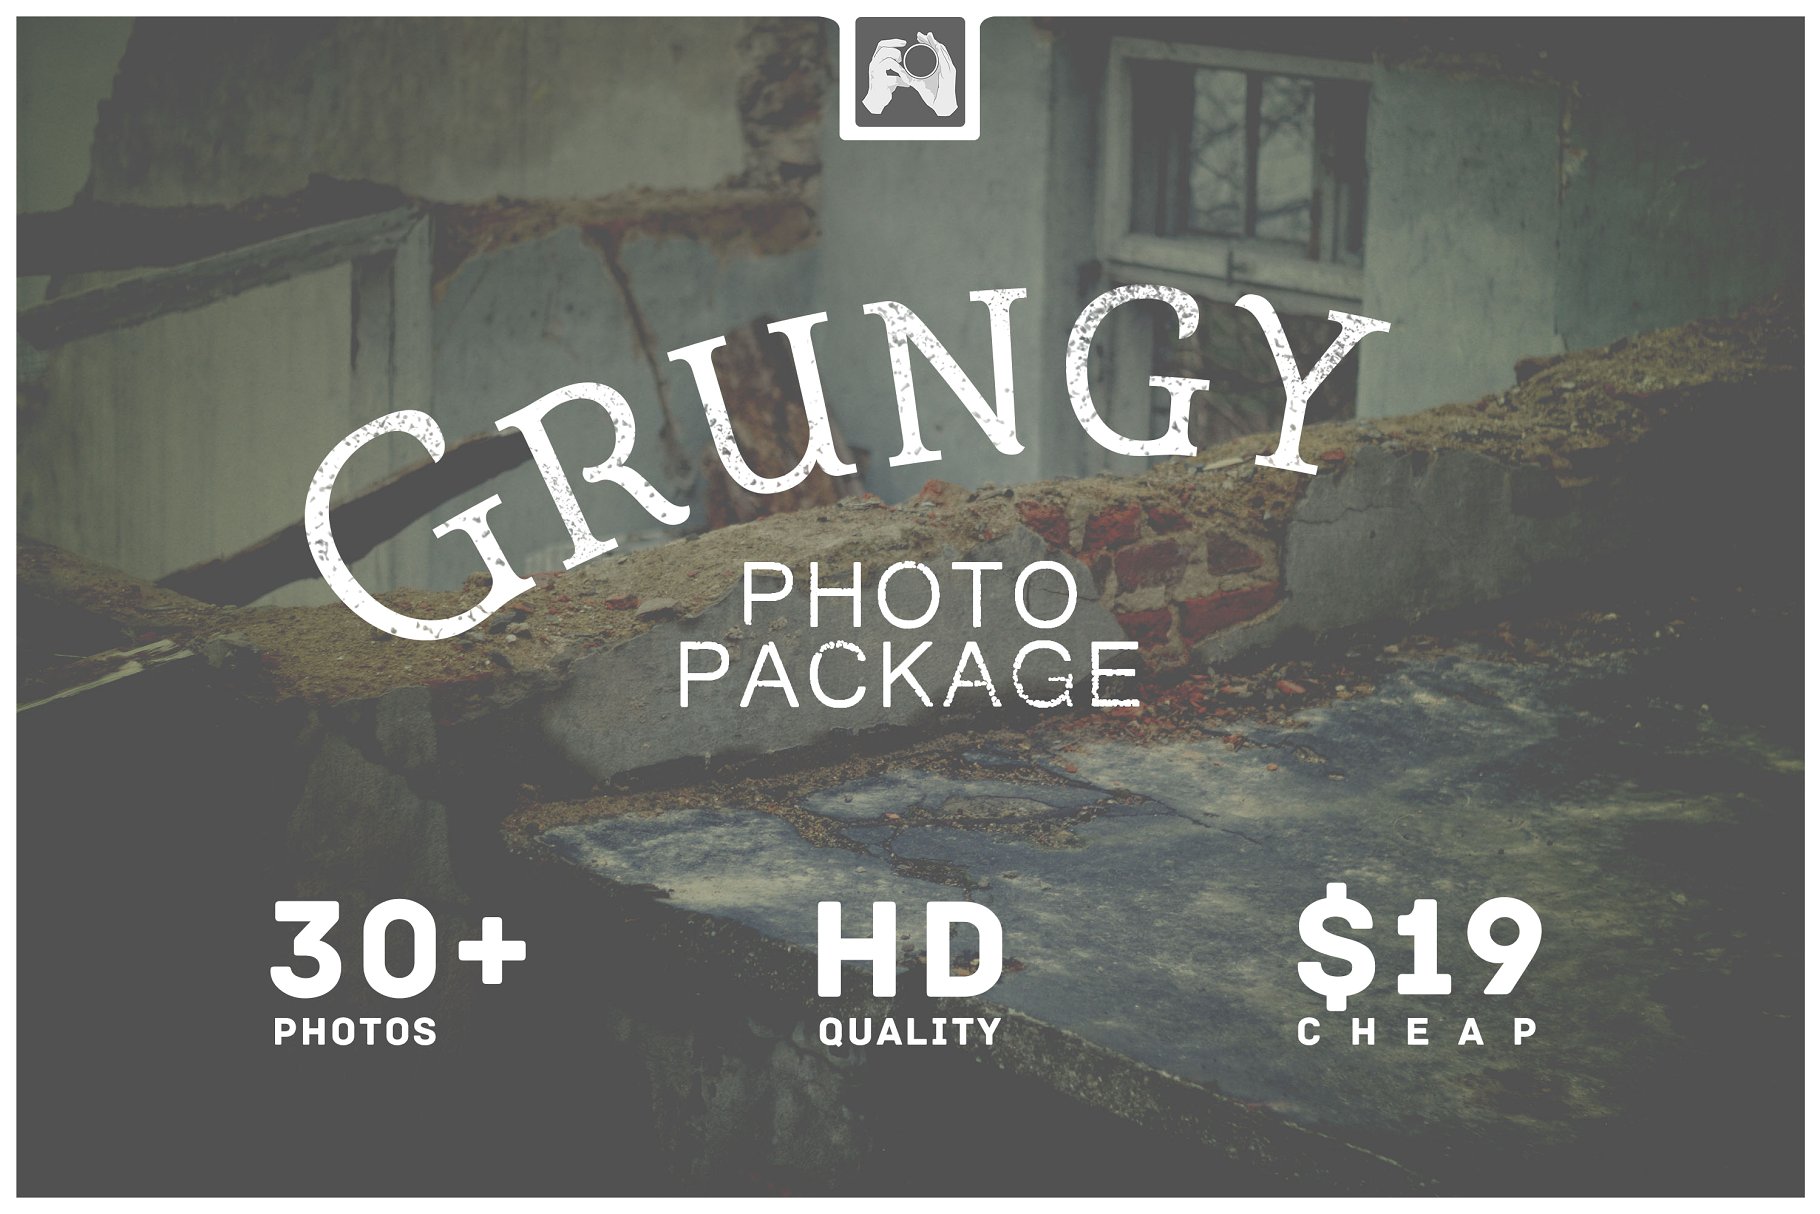 废墟萧条景象高清照片素材 Grungy Photo Pack插图